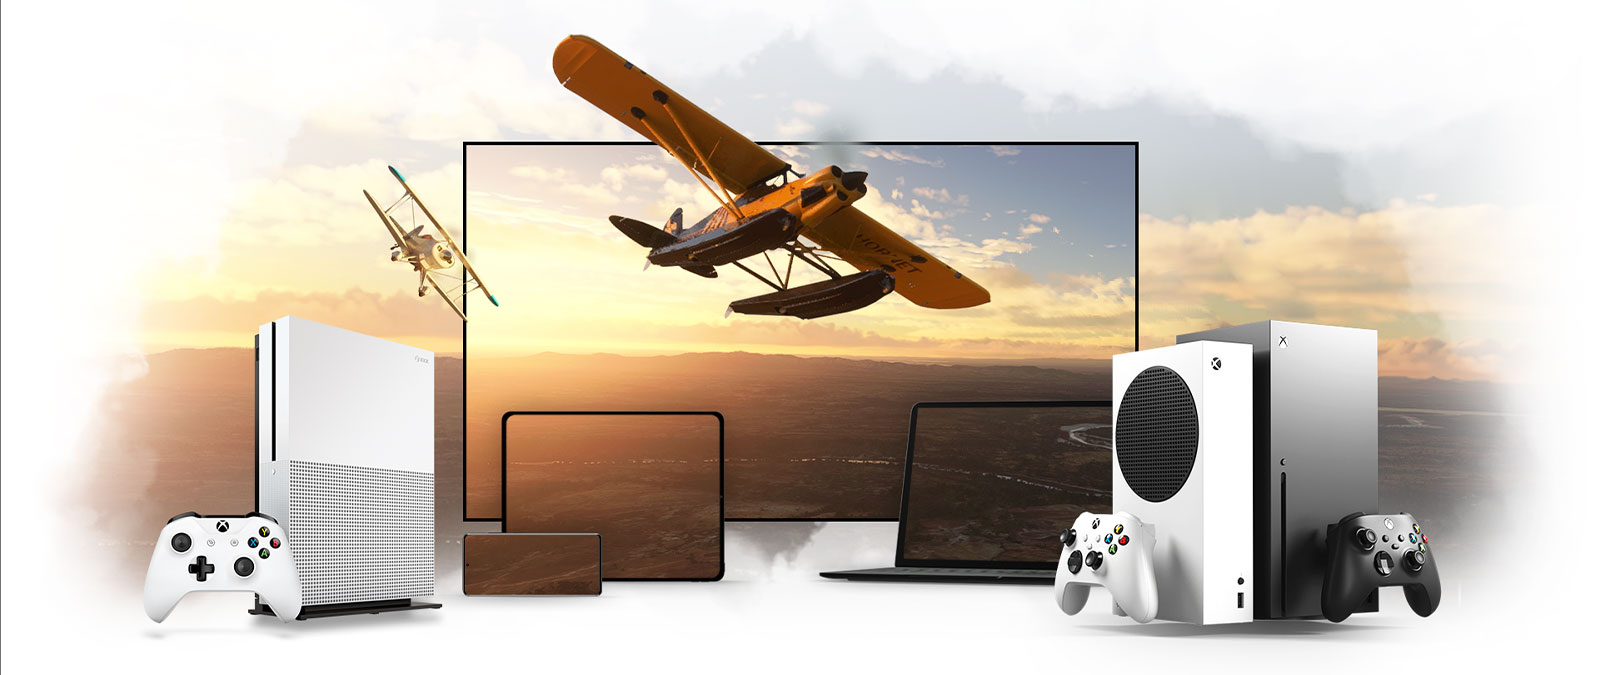 Urządzenia ustawione w linii, w tym telewizor, Xbox One i Xbox Series X. Samolot śmigłowy odlatuje od oświetlonego słońcem horyzontu.